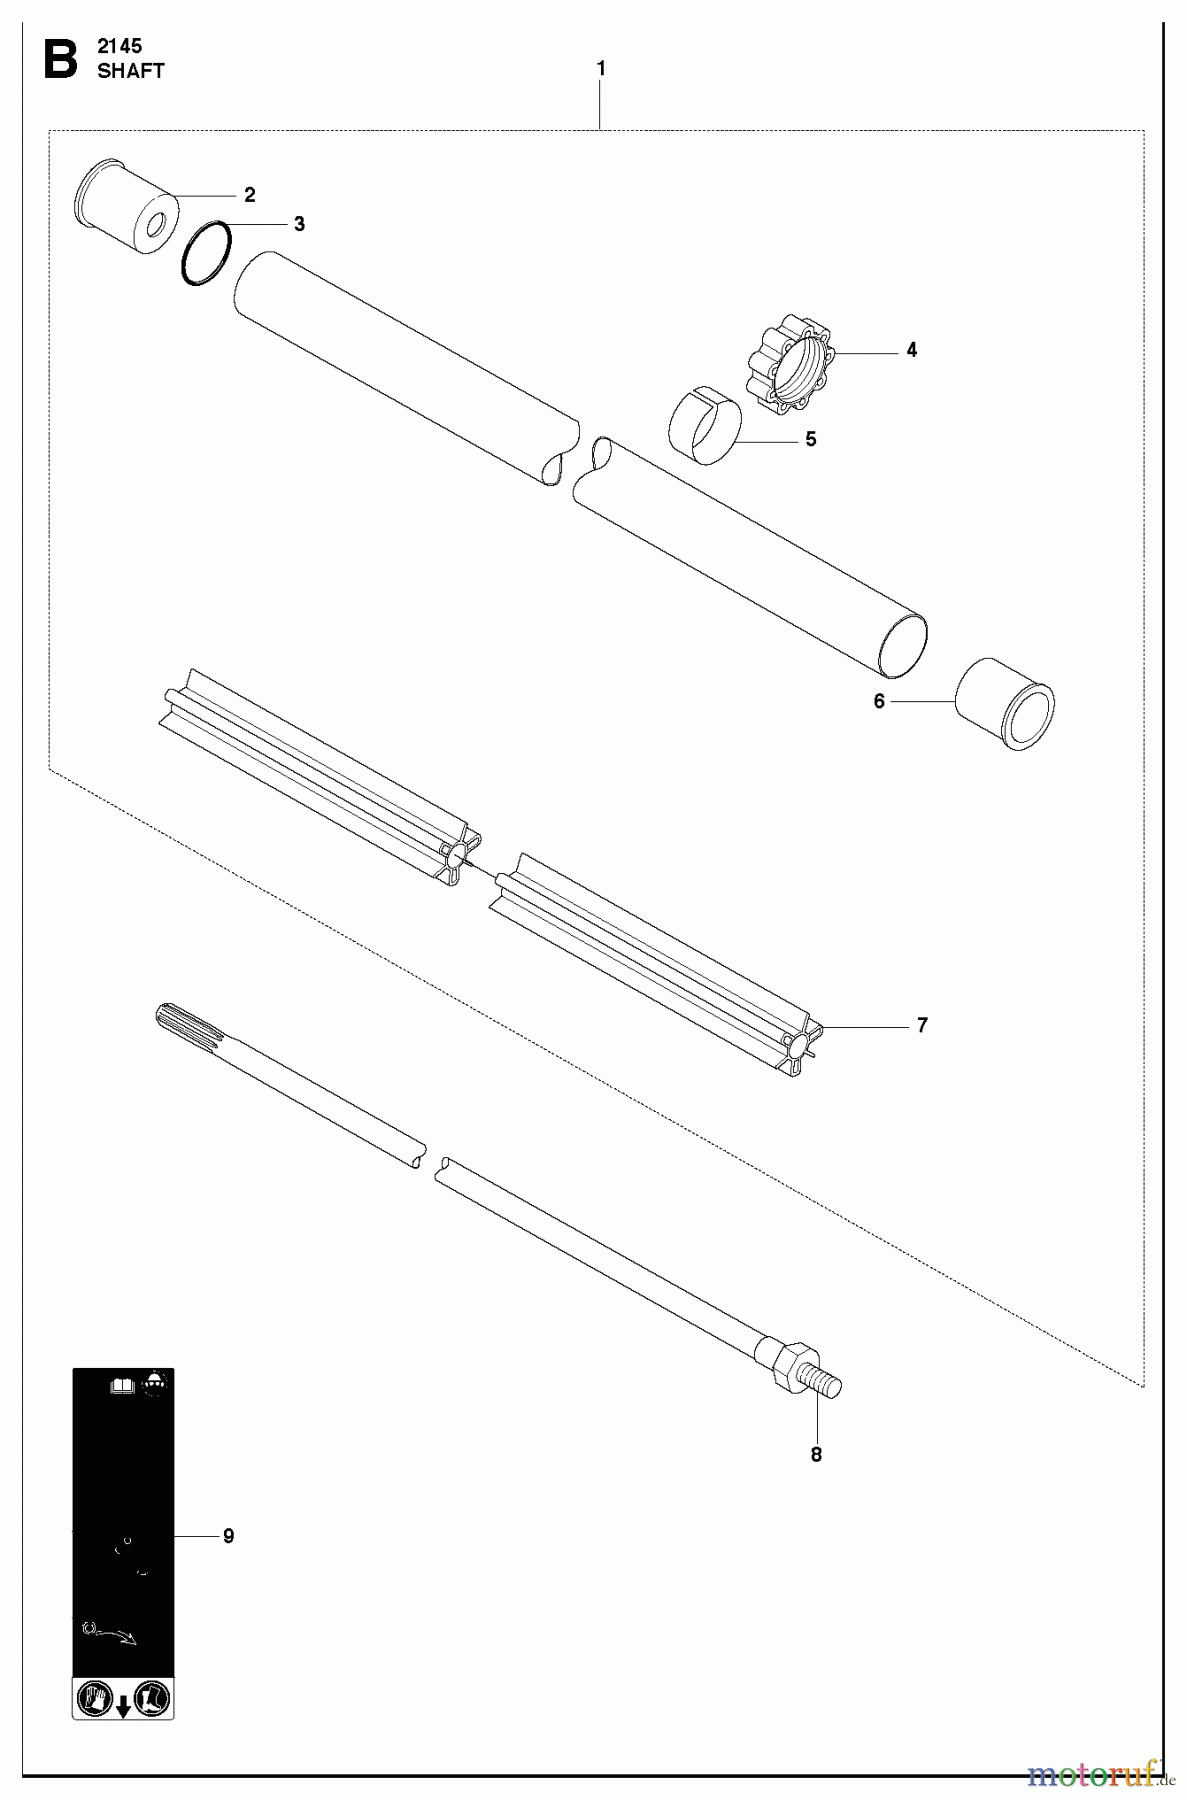  Jonsered Motorsensen, Trimmer FC2145 - Jonsered String/Brush Trimmer (2010-09) SHAFT